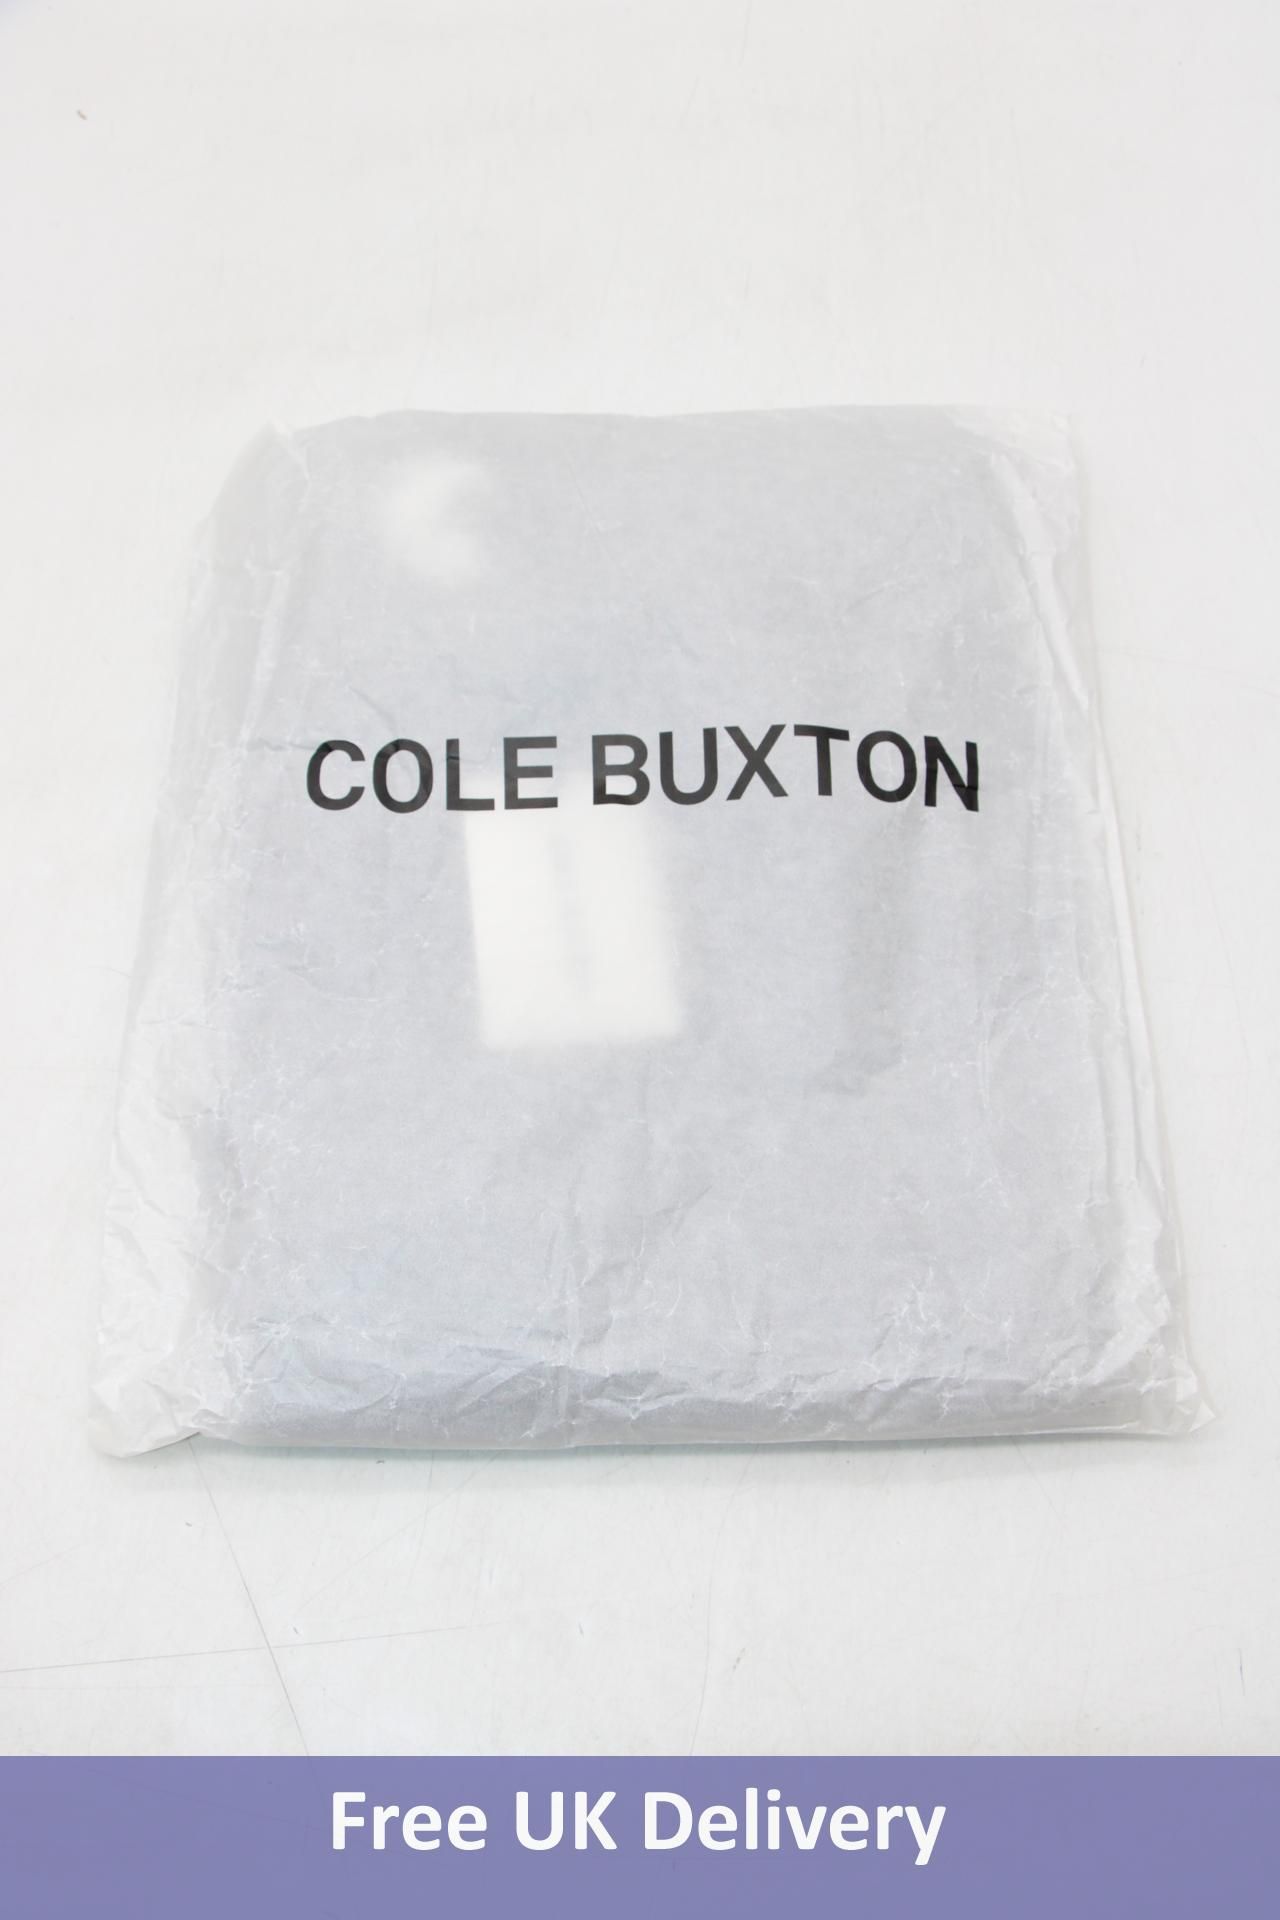 Cole Buxton Lounge Sweatpants, OG Washed Black, Size XL